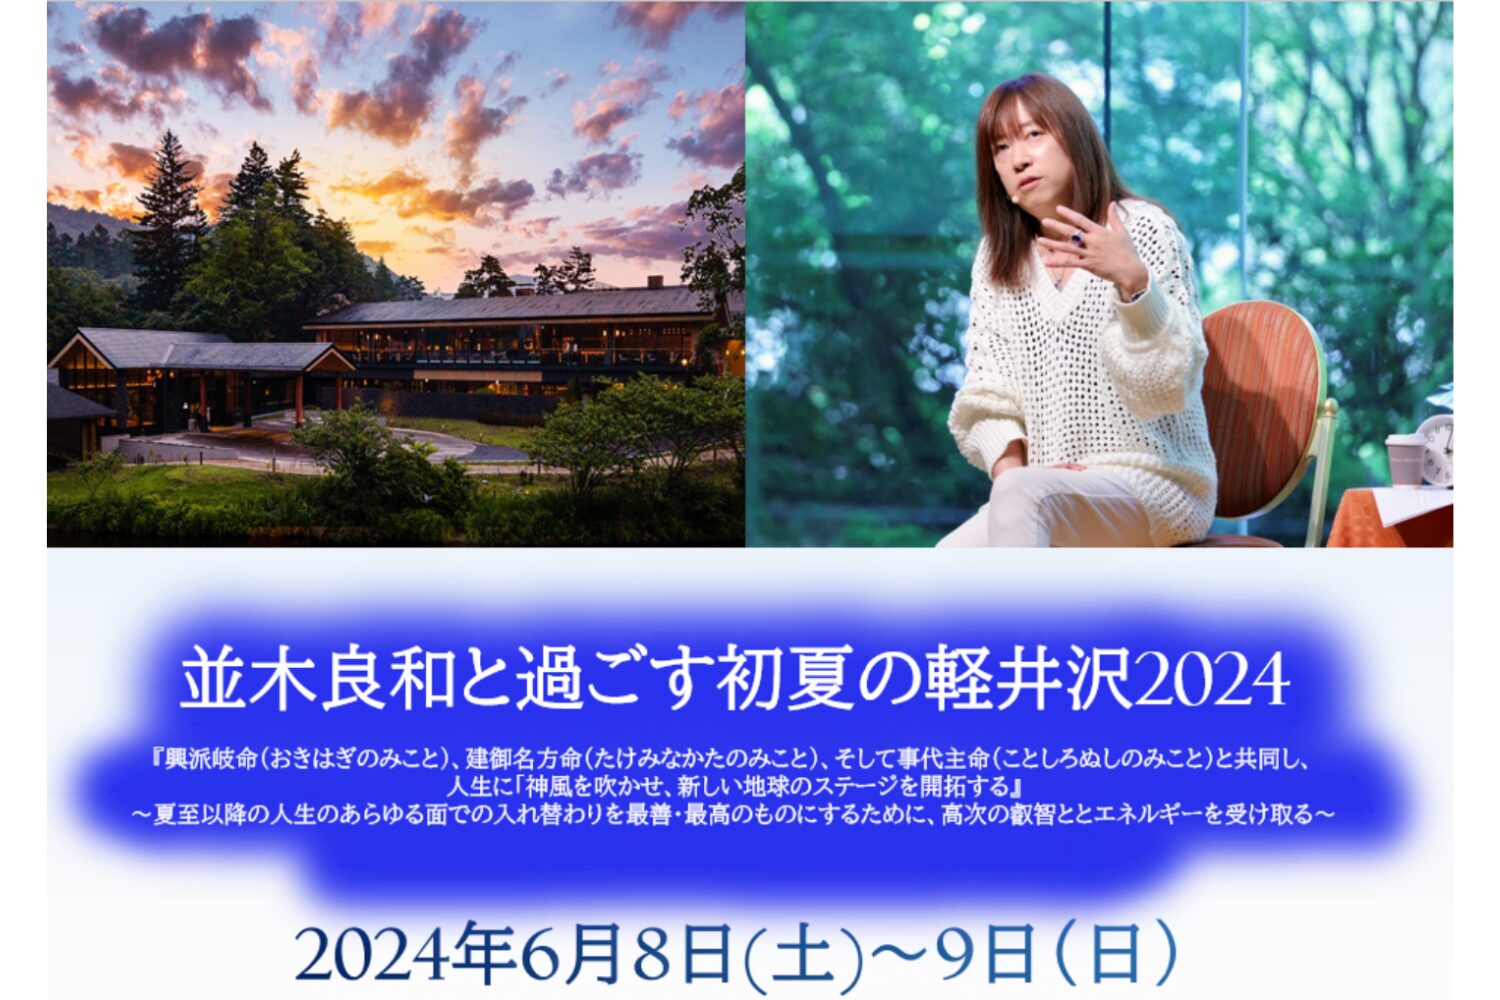 6/8・6/9】『並木良和と過ごす初夏の軽井沢2024』リマインダーです 